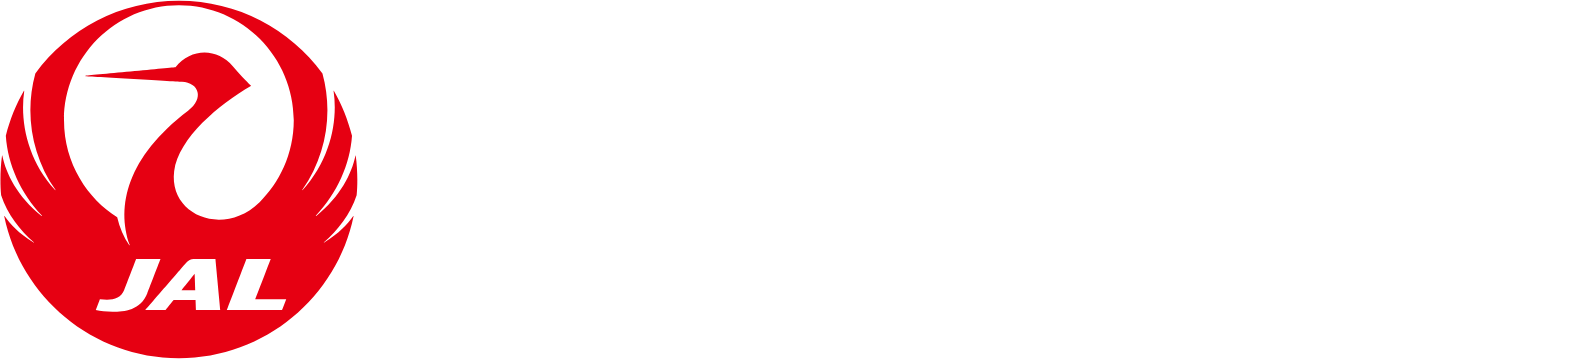 Japan Airlines
 logo large for dark backgrounds (transparent PNG)